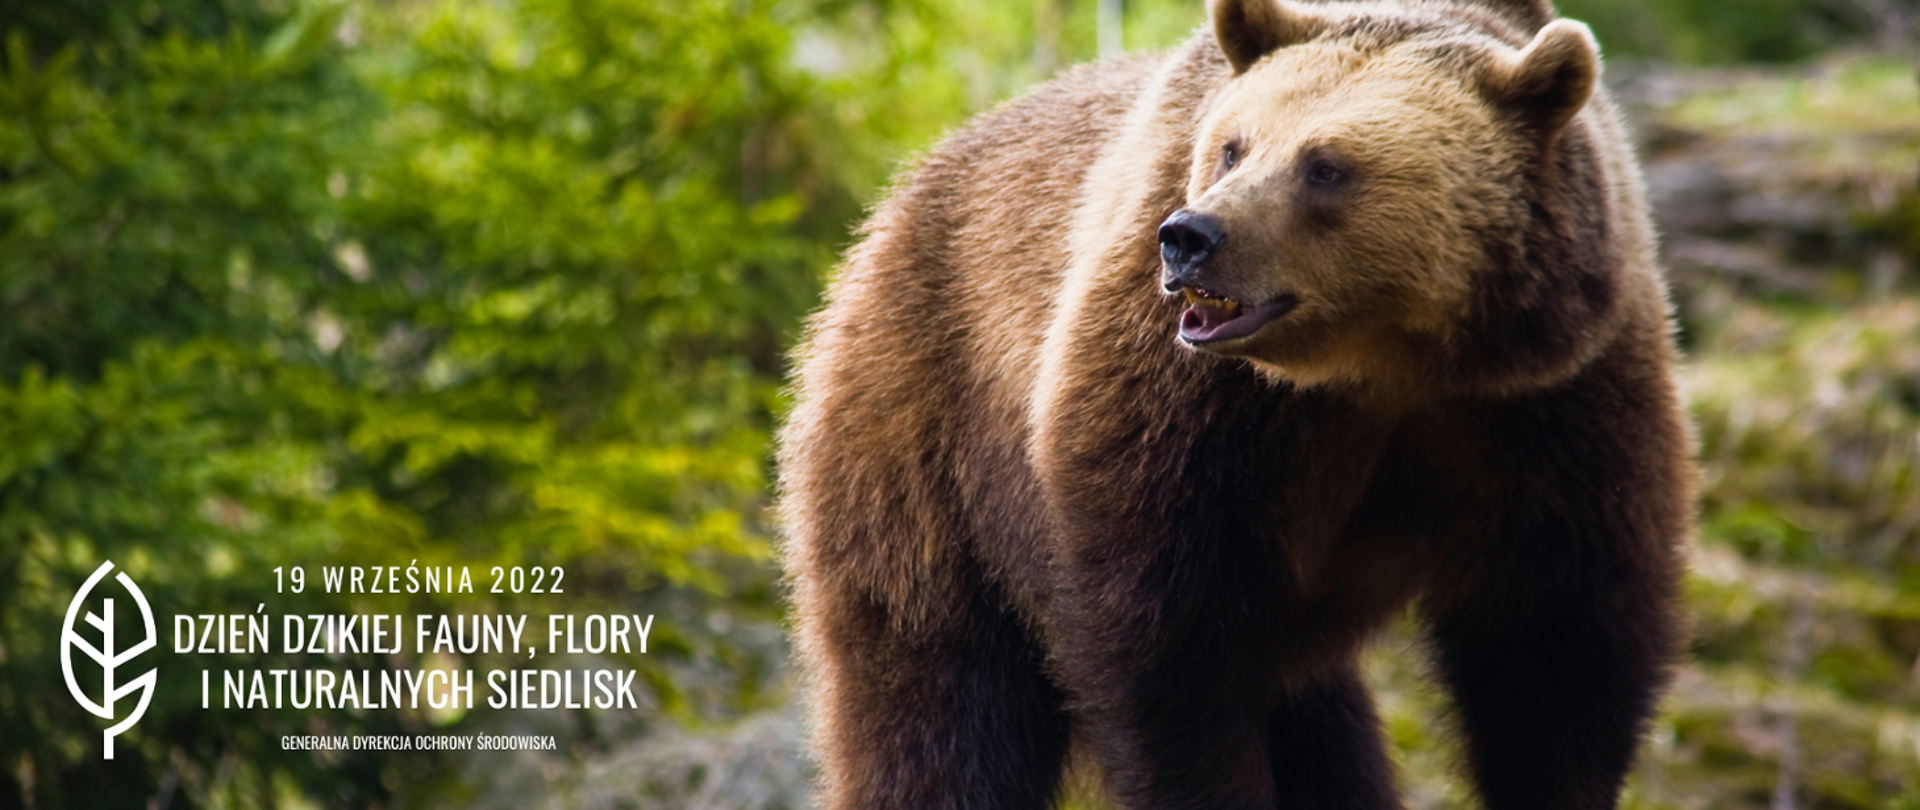 Niedźwiedź w zielonym lesie i napis Dzień Dzikiej Fauny, Flory i Naturalnych Siedlisk 19 września 2022 Generalna Dyrekcja Ochrony Środowiska